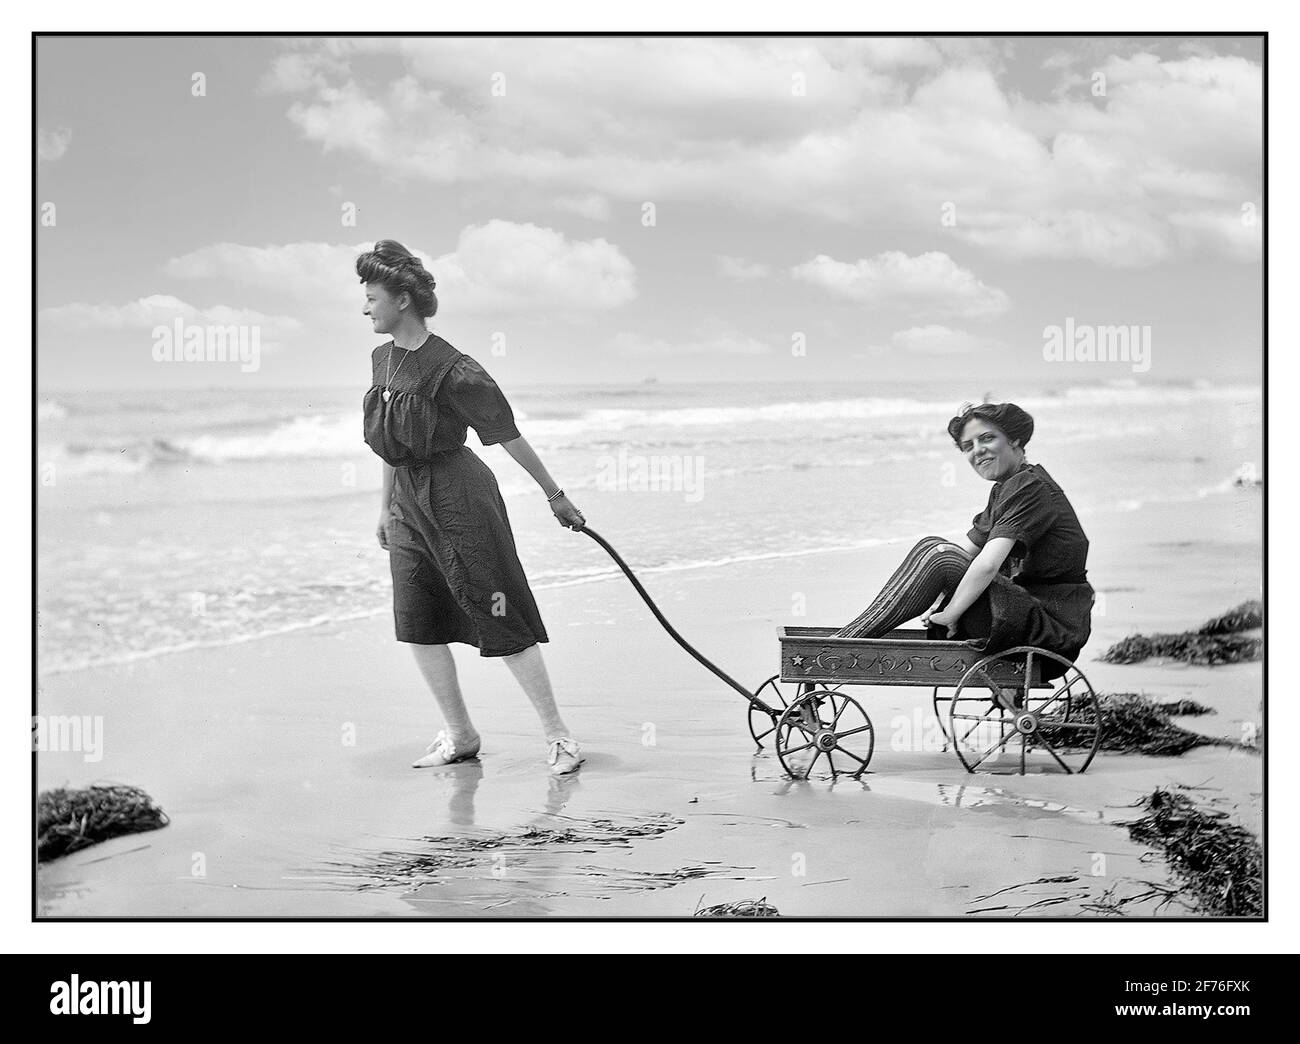 Belles da bagno d'epoca con un modesto abbigliamento da spiaggia vittoriano che si diverge a giocare sulla spiaggia a Atlantic City, NJ circa 1905 USA America americana stile di vita Moda 1900 Foto Stock